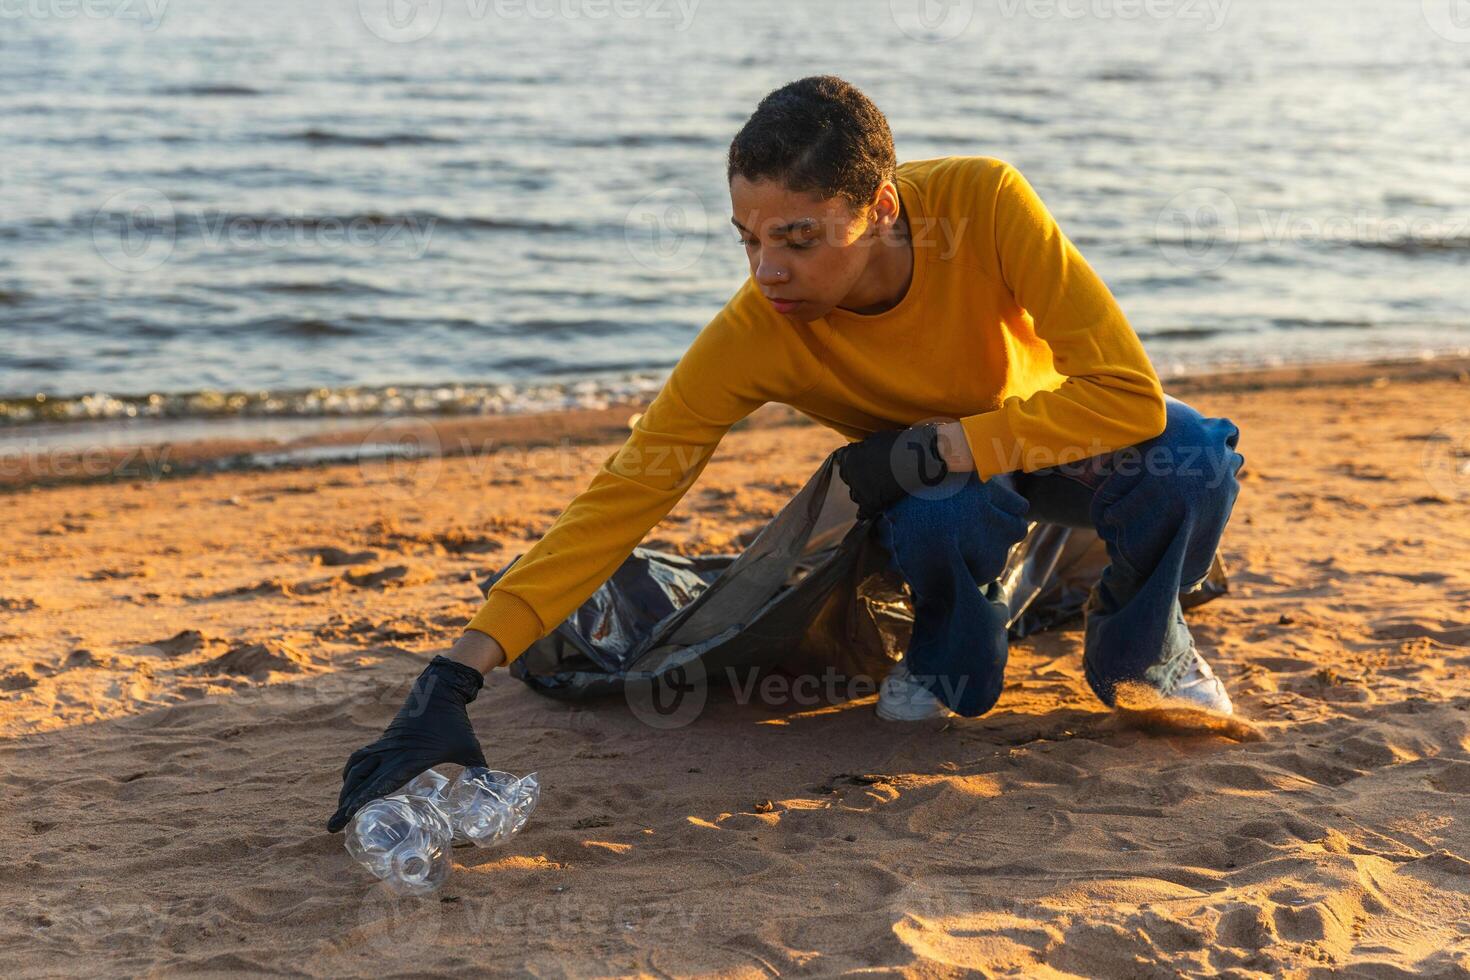 Terre journée. bénévoles militants équipe recueille des ordures nettoyage de plage côtier zone. femme met Plastique poubelle dans des ordures sac sur océan rive. environnement préservation côtier zone nettoyage photo